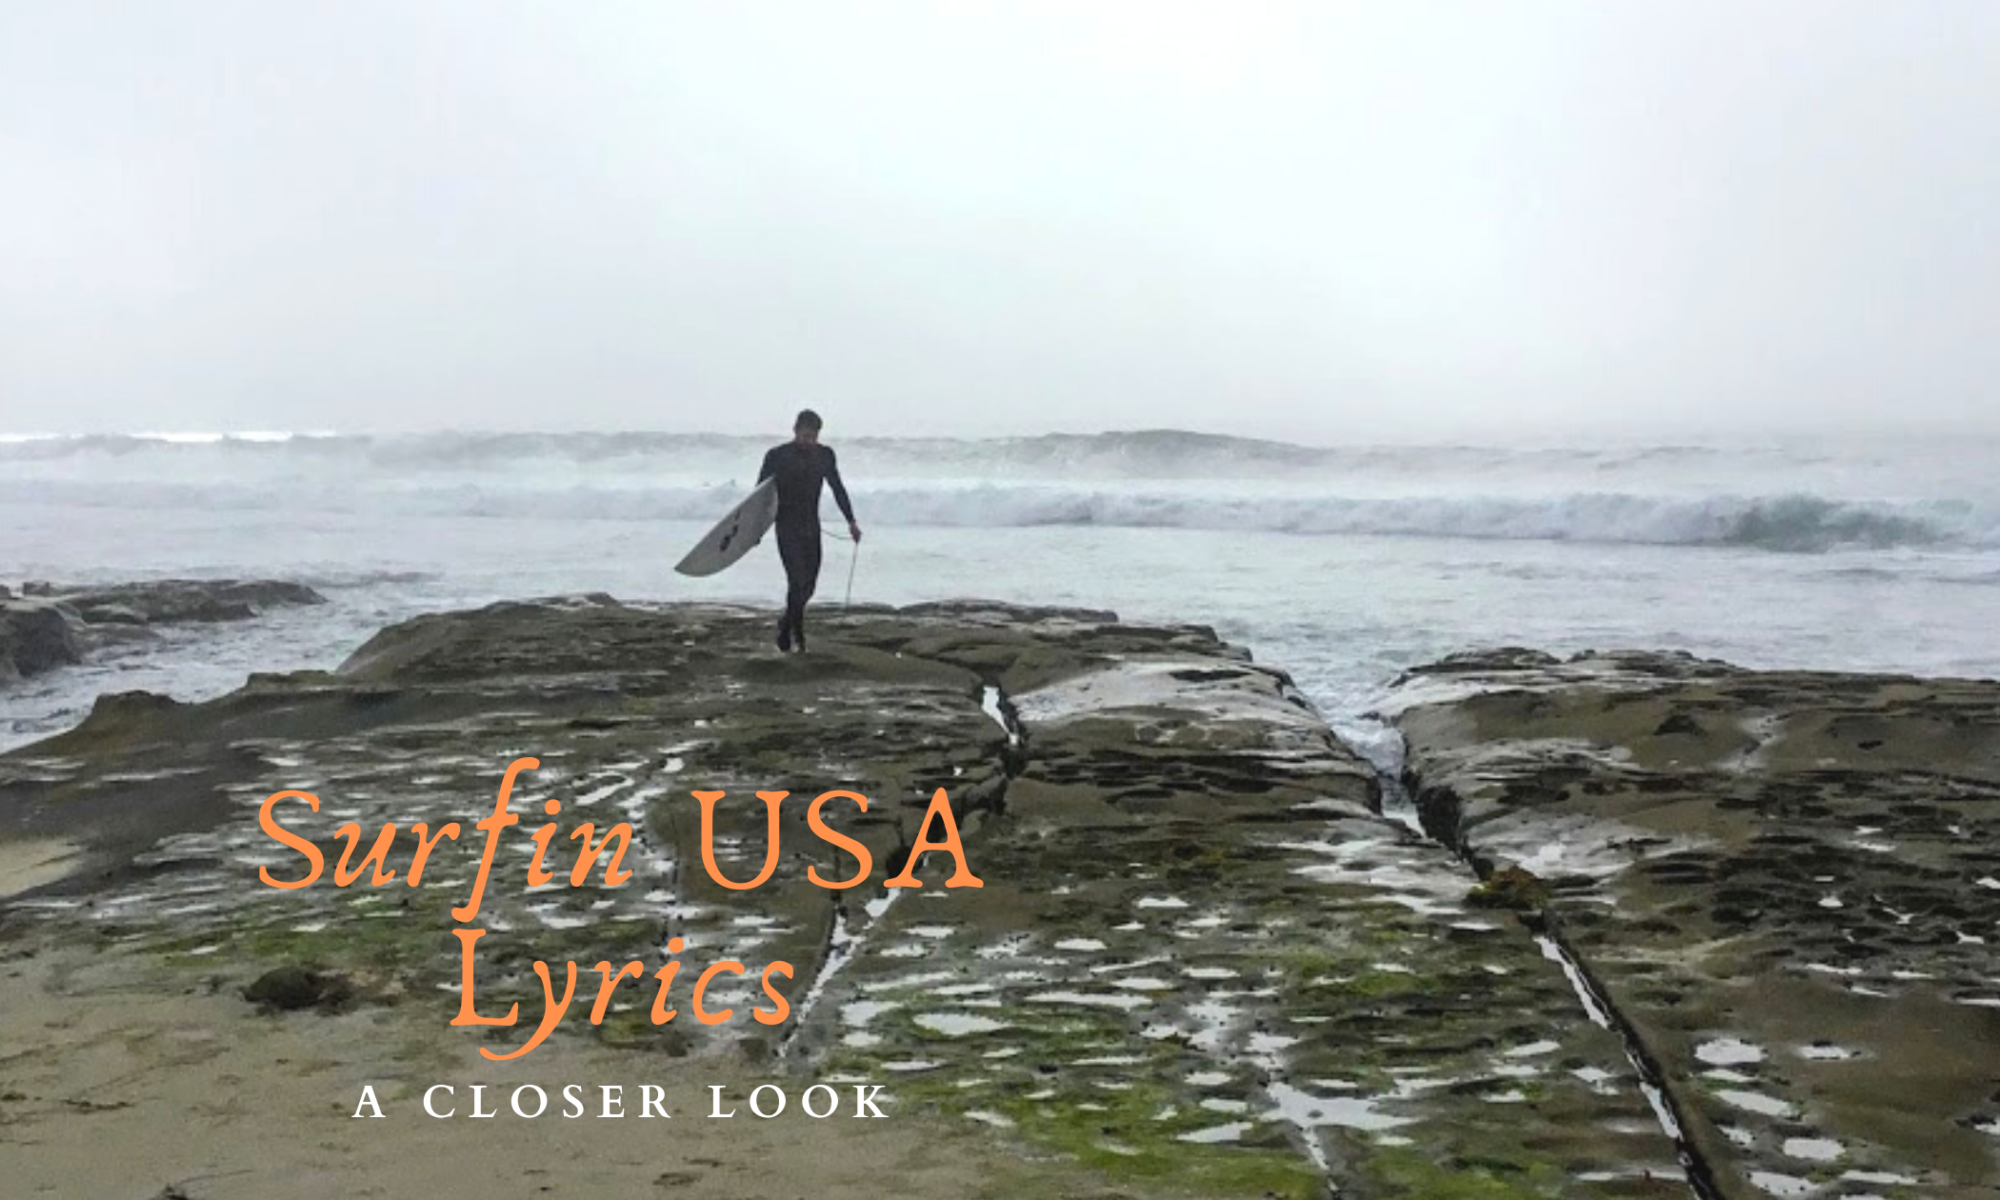 Surfing USA lyrics Featured Image